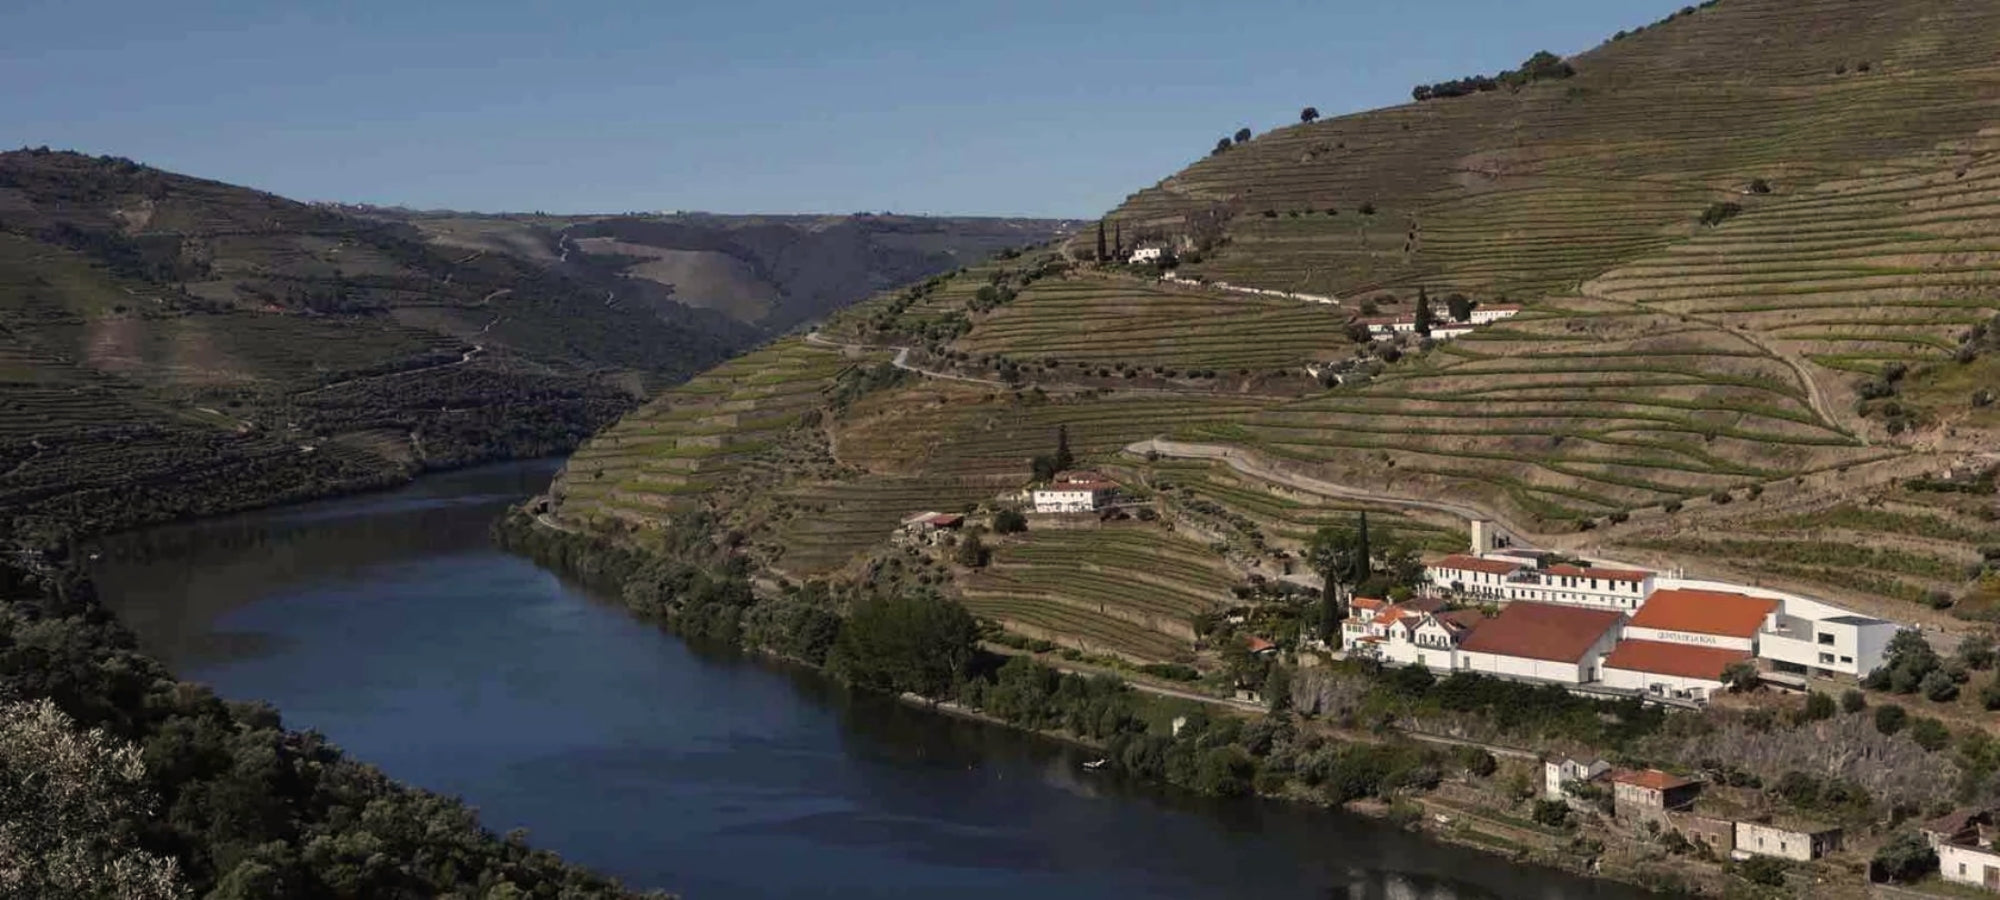 Weinberge entlang des Douro Flusses, ebenfalls auf dem Bild zu sehen das Weingut der Quinta de la Rosa am Hang gelegen.